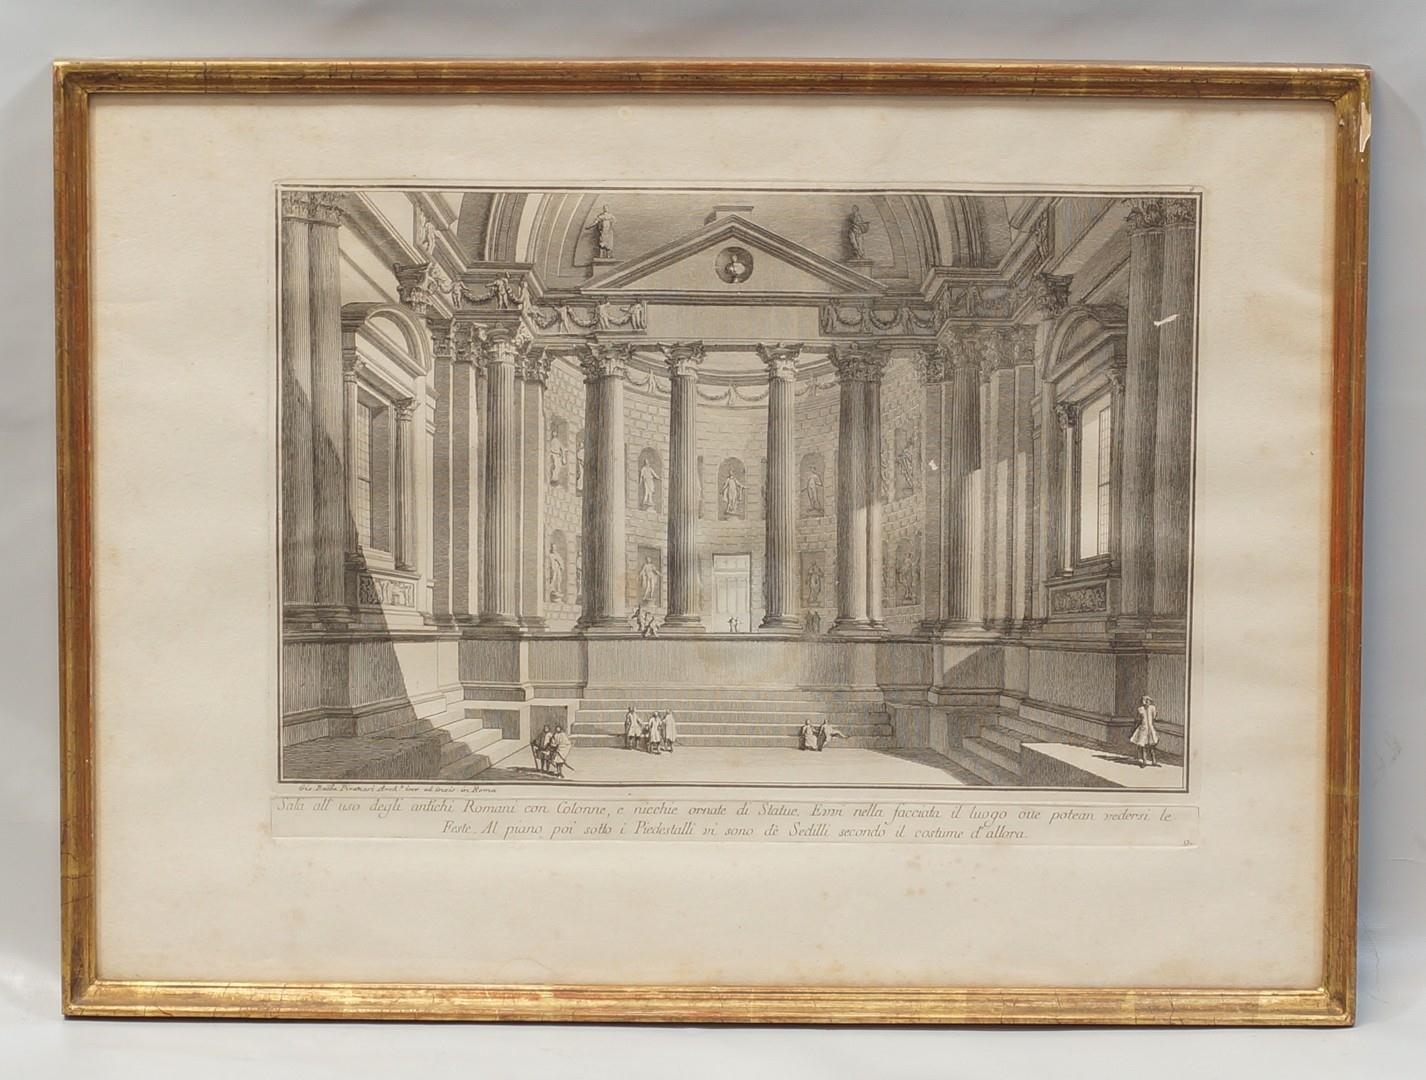 Sala all uso Degli Antichi Romani con Colonne by Giovanni Battista Piranesi, Published 1750